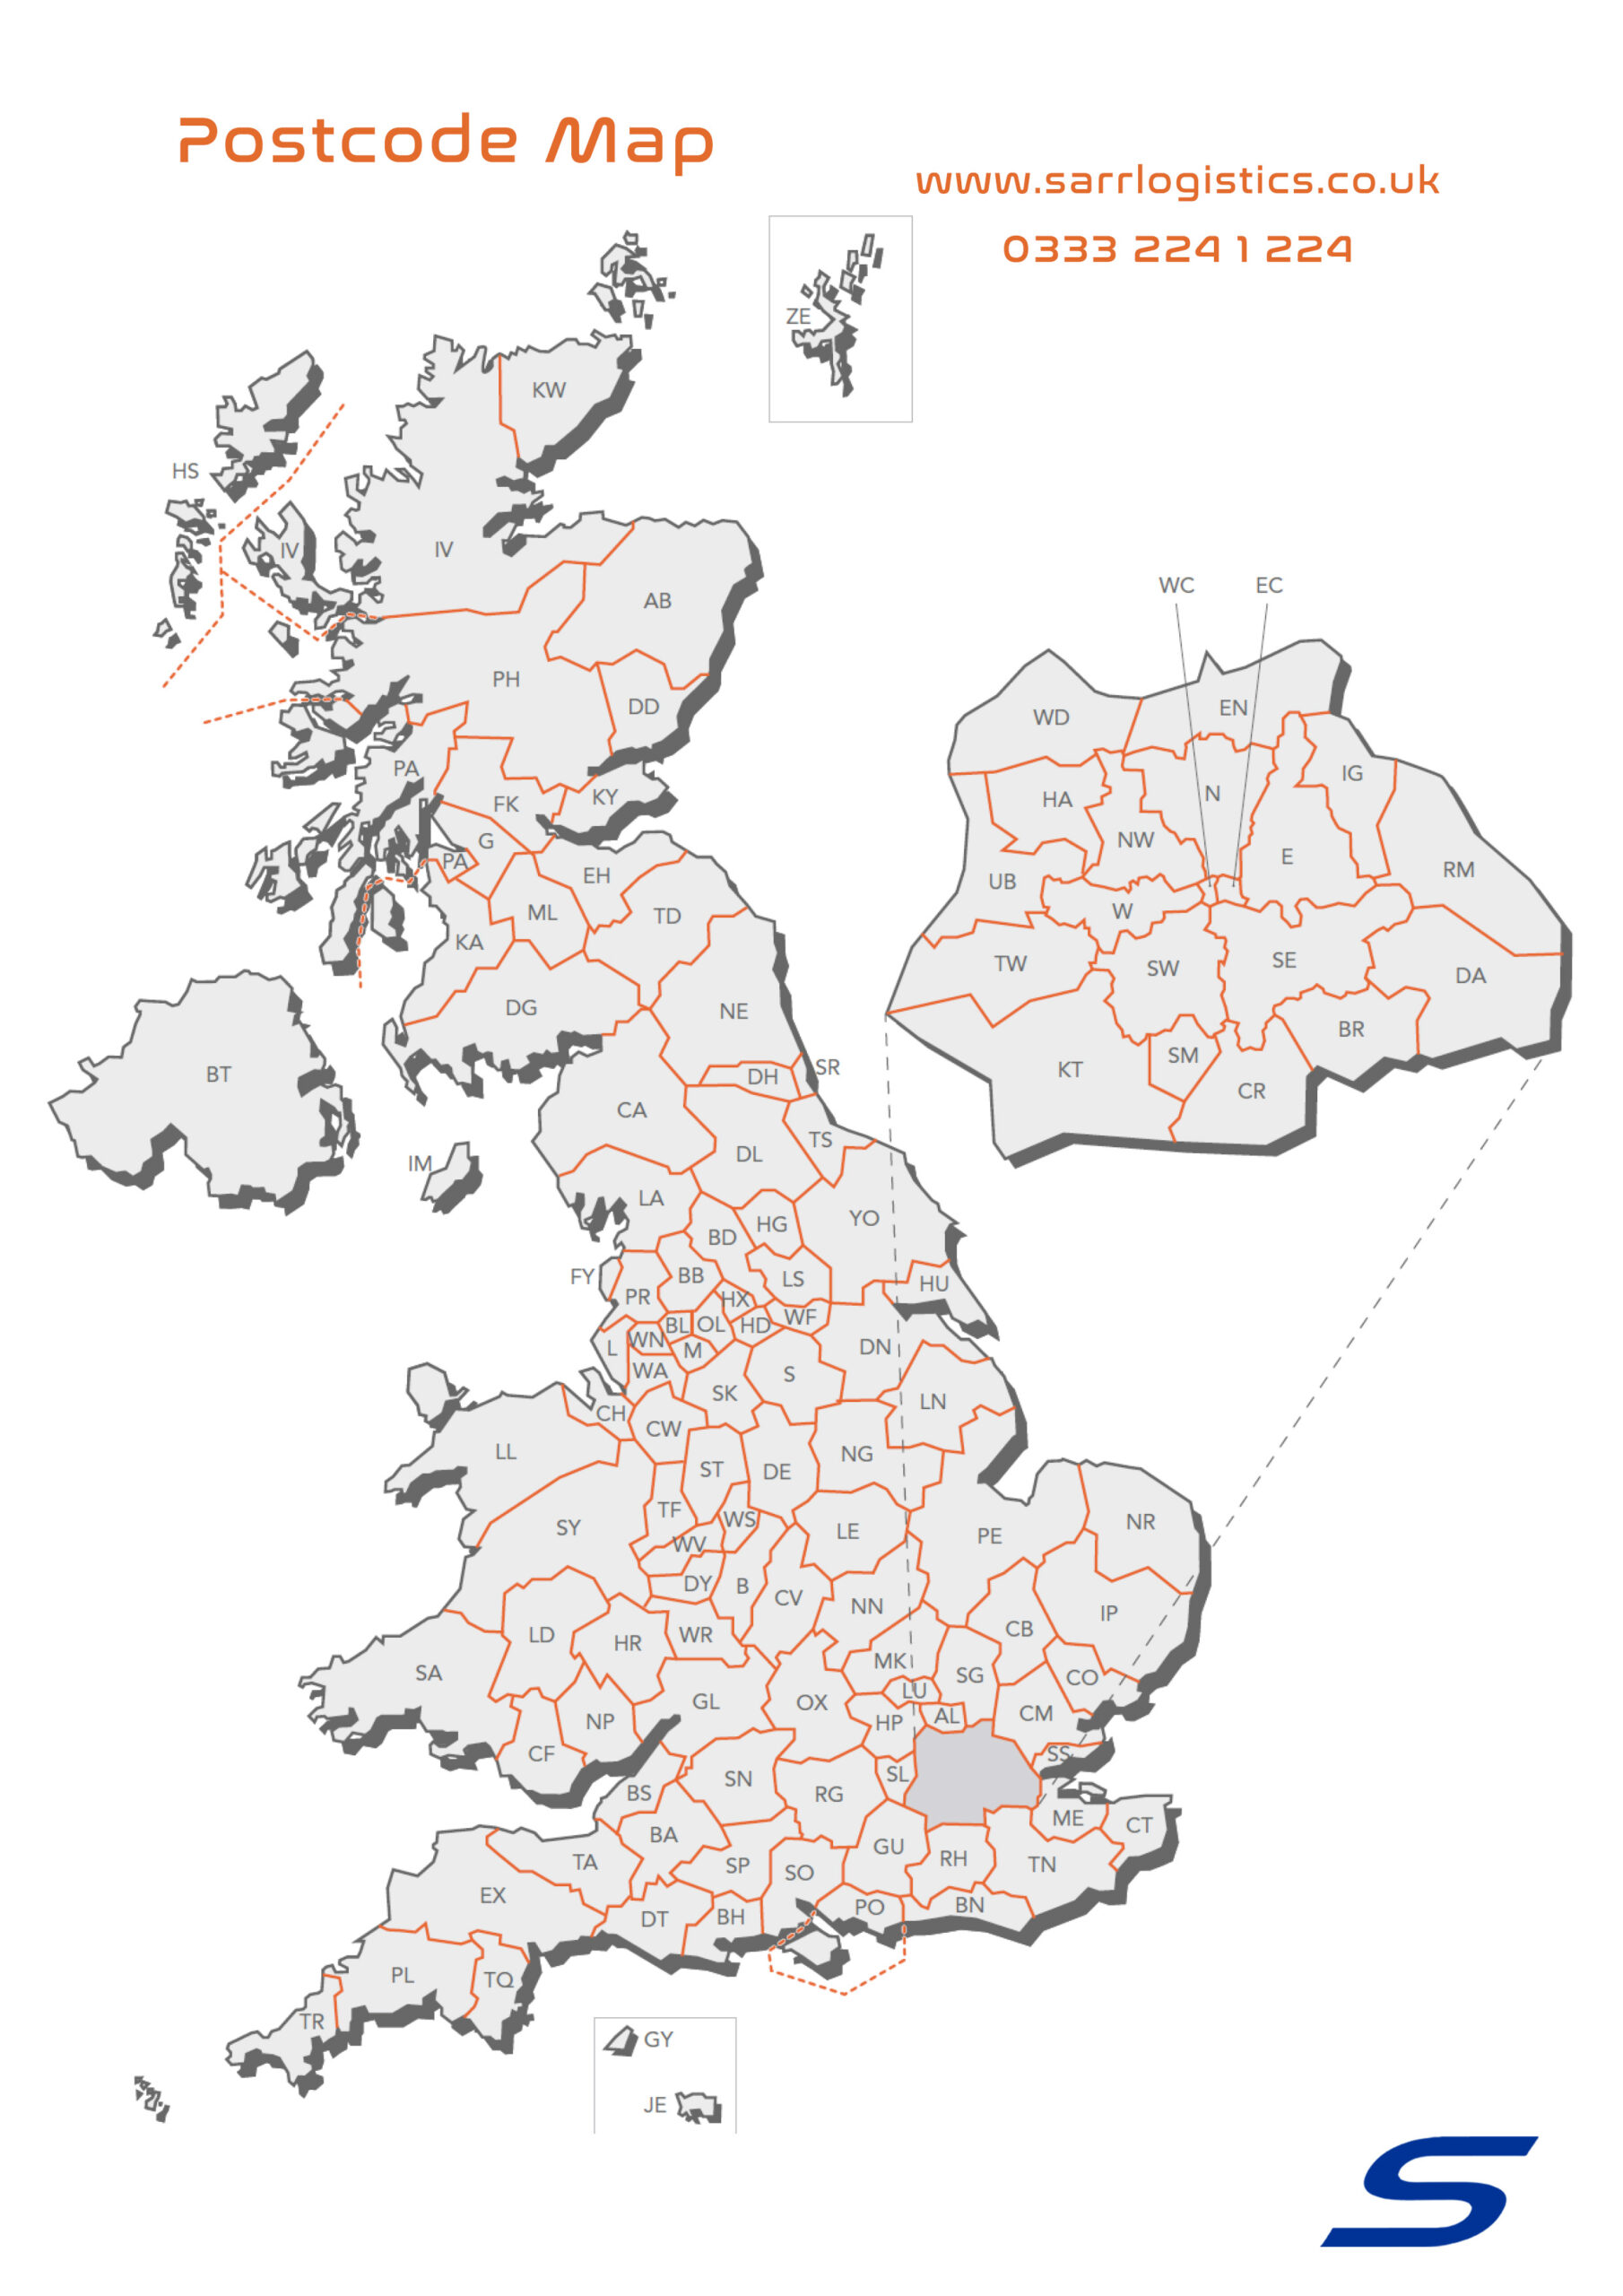 UK postcodes